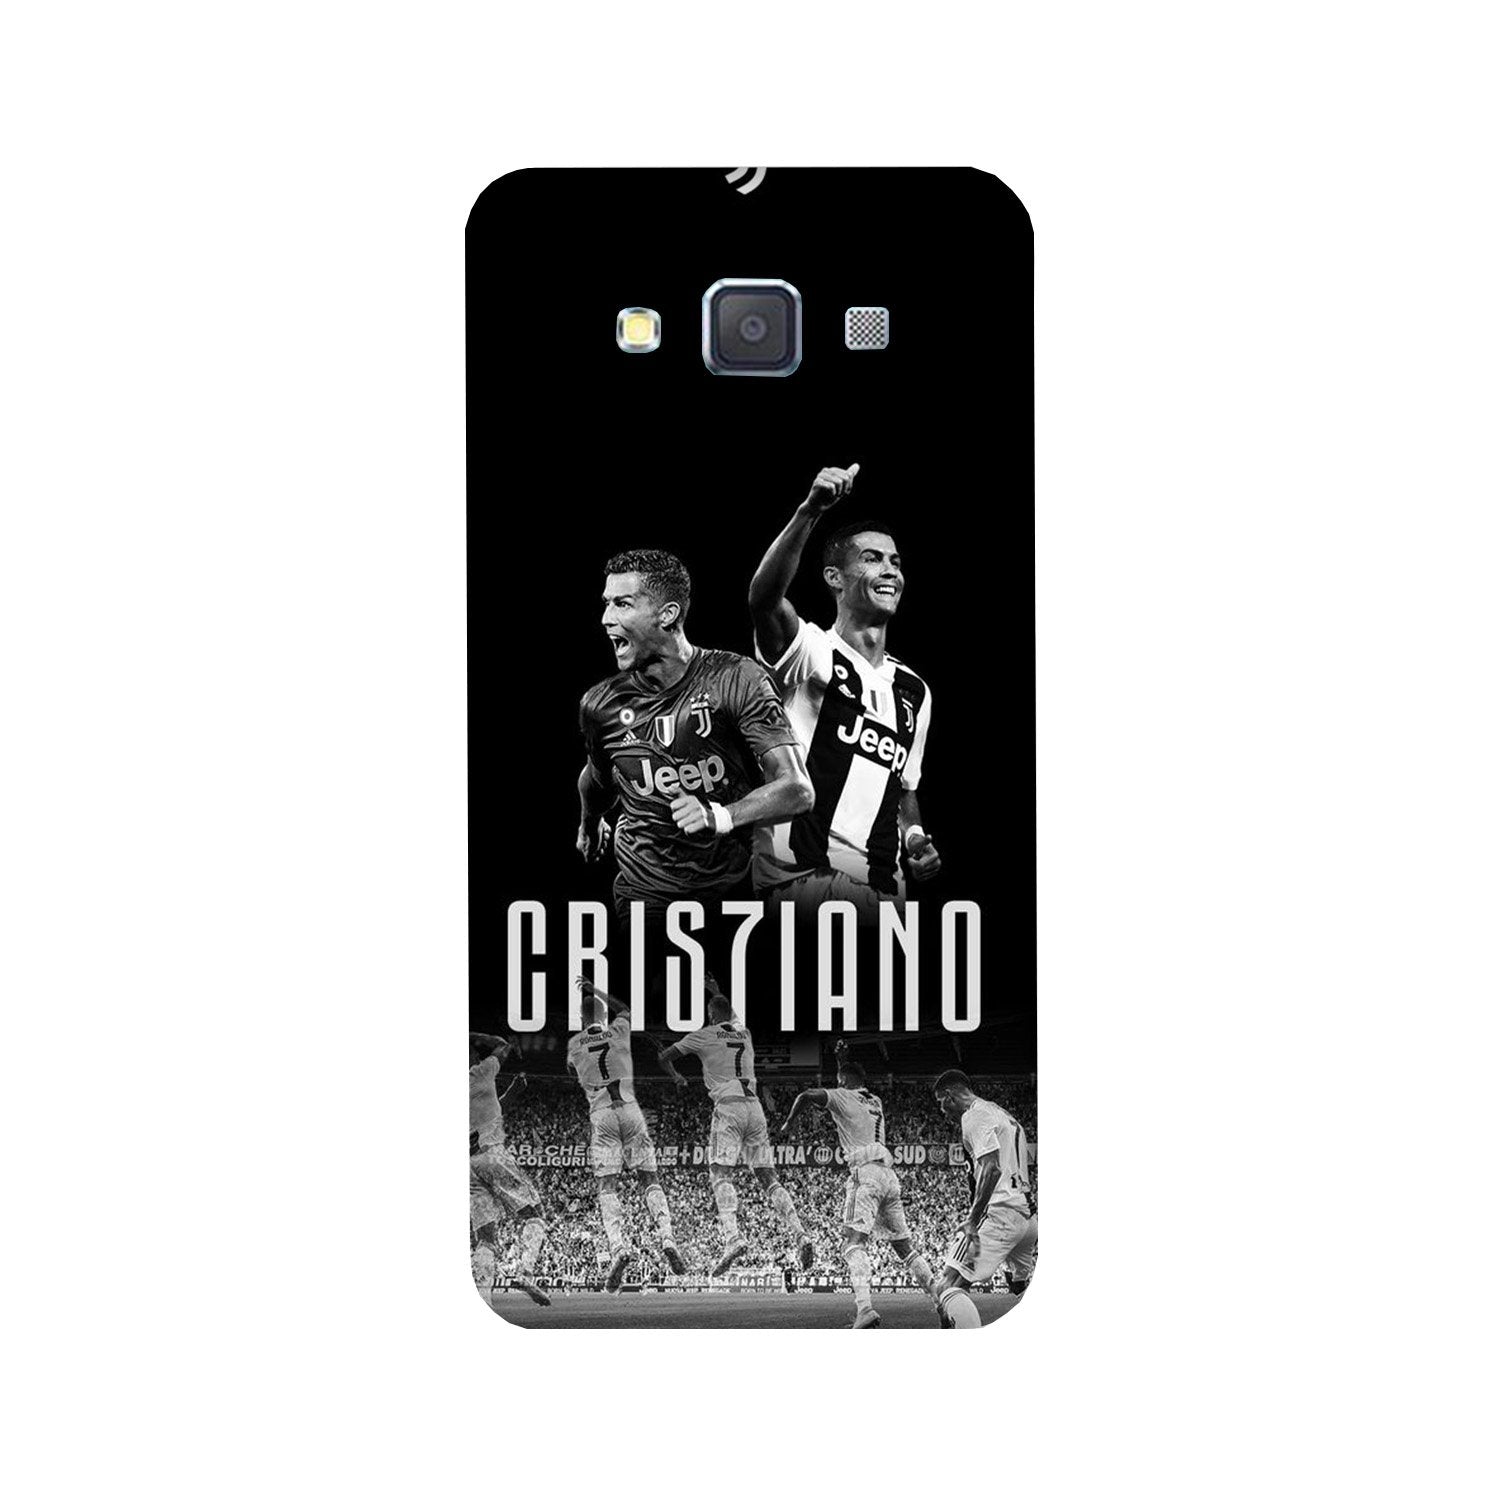 Cristiano Case for Galaxy Grand Prime(Design - 165)